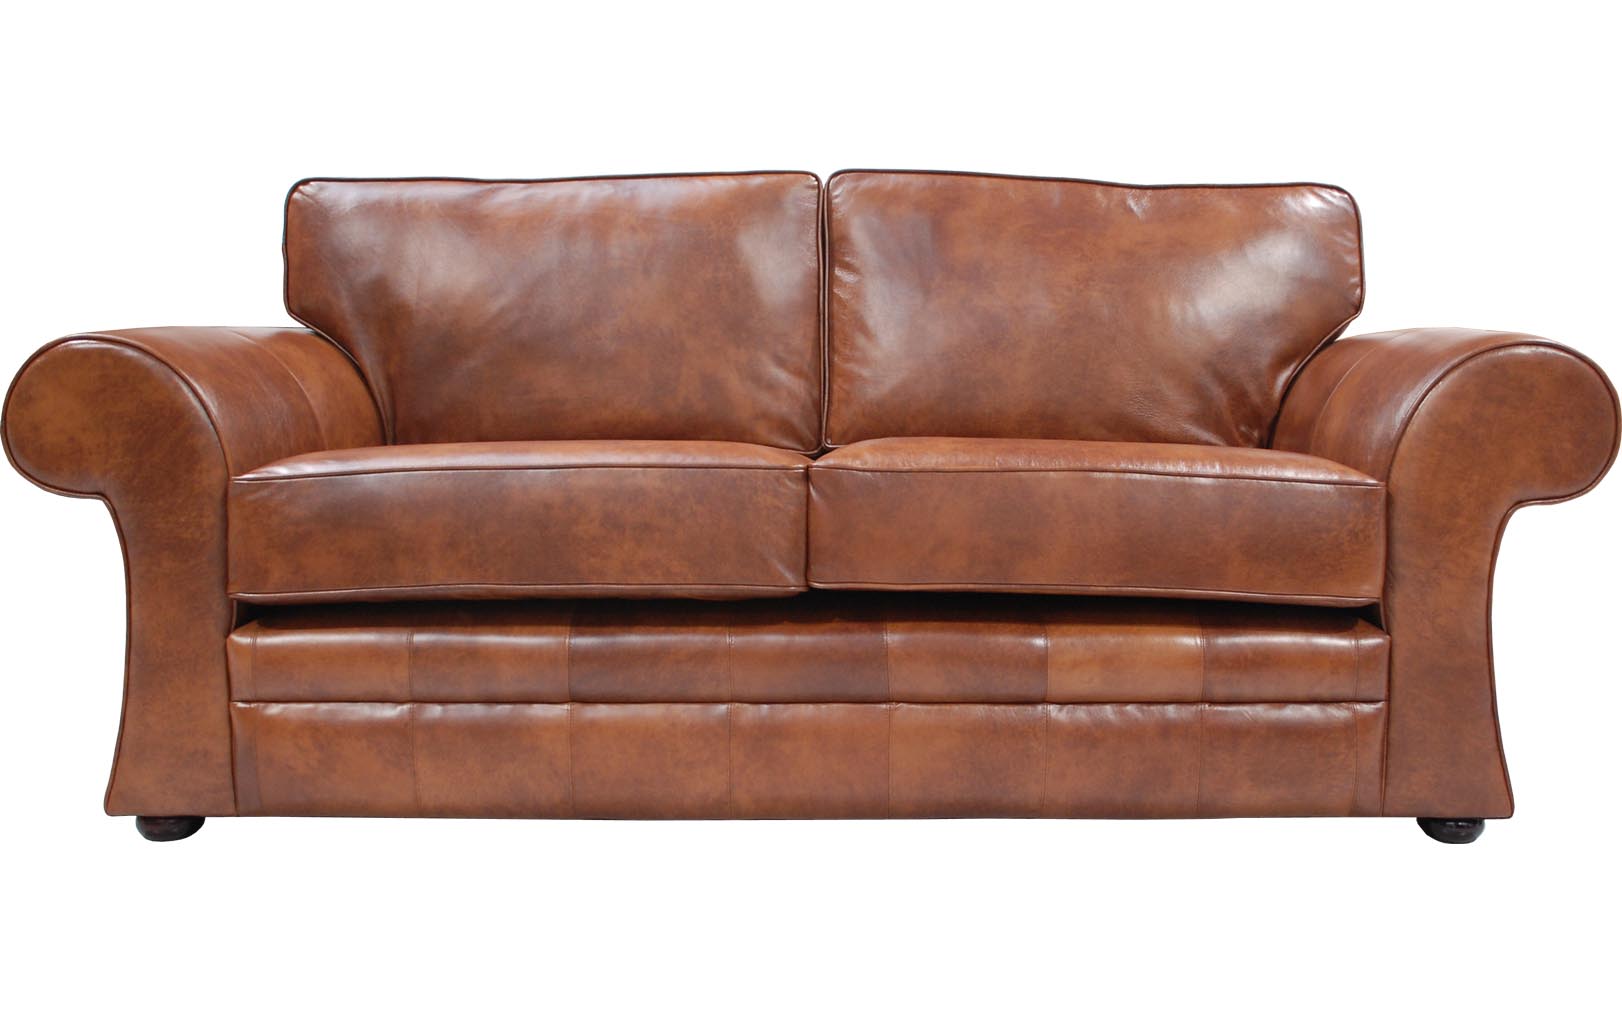 sofa leather sofa beds